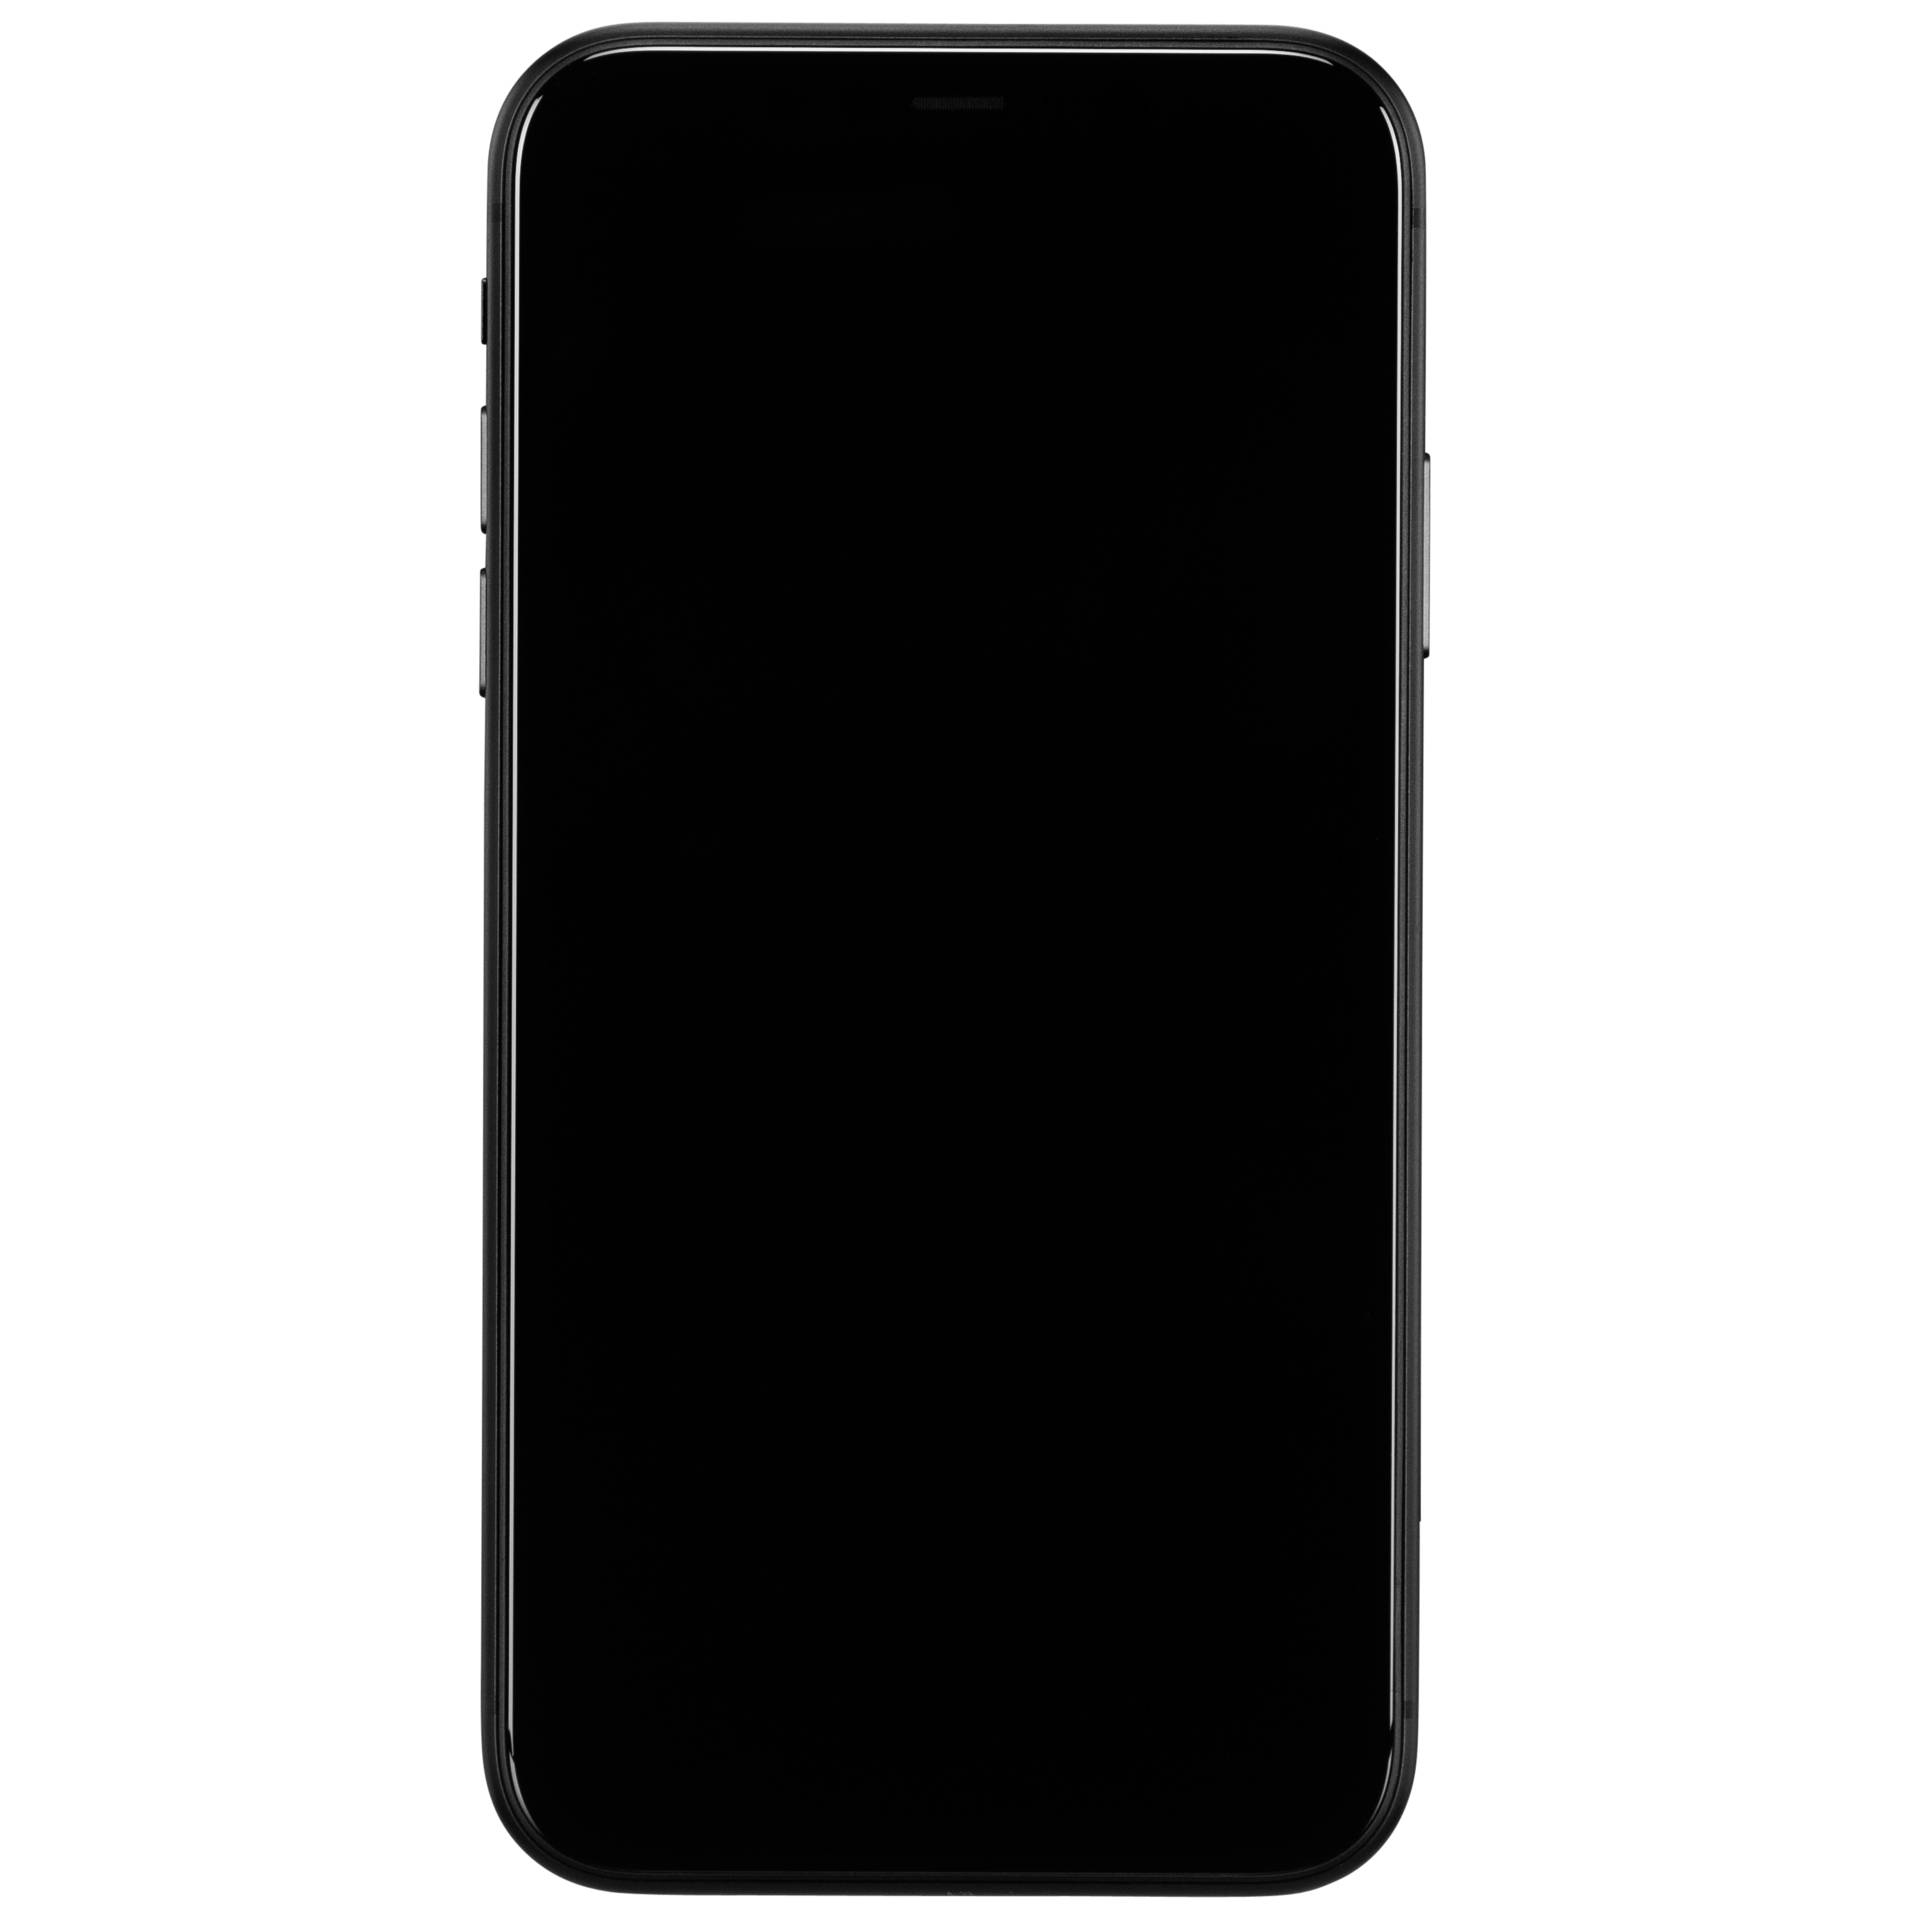 Apple iPhone 11 15,5 cm (6.1) Dual-SIM iOS 14 4G 64 GB Schwarz